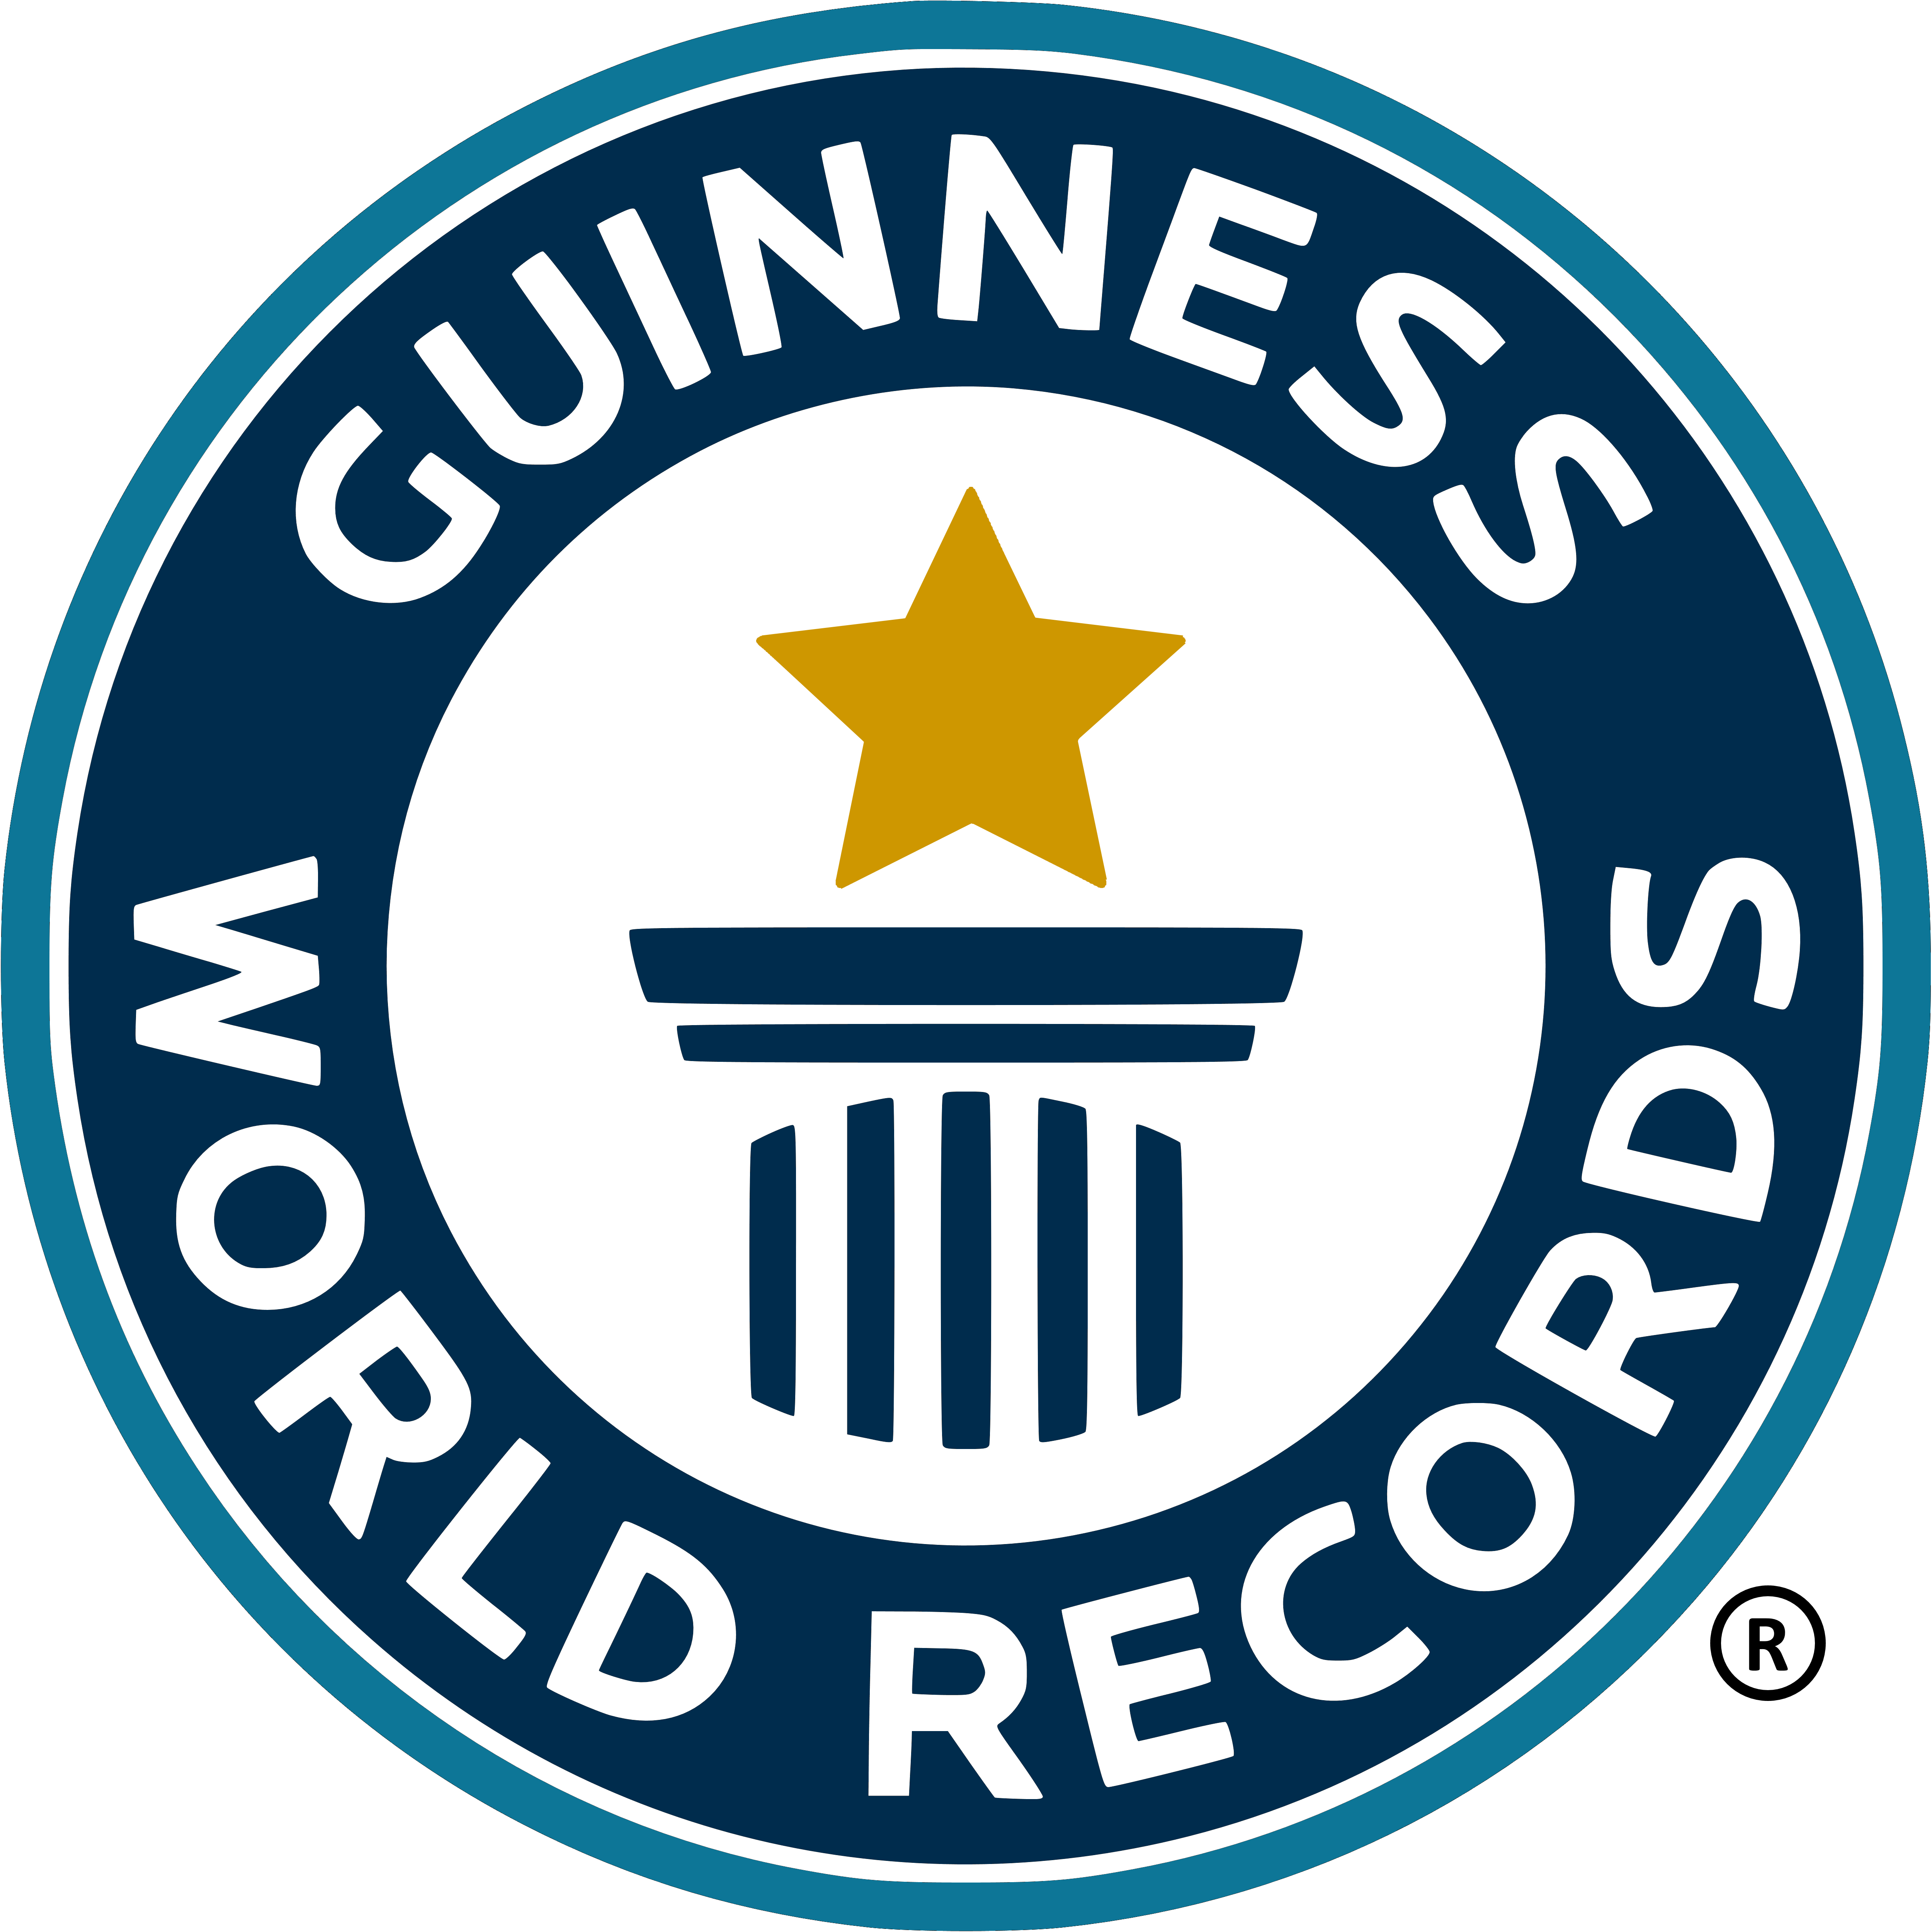 Guinness World Record Logo PNG HD and Transparent pngteam.com